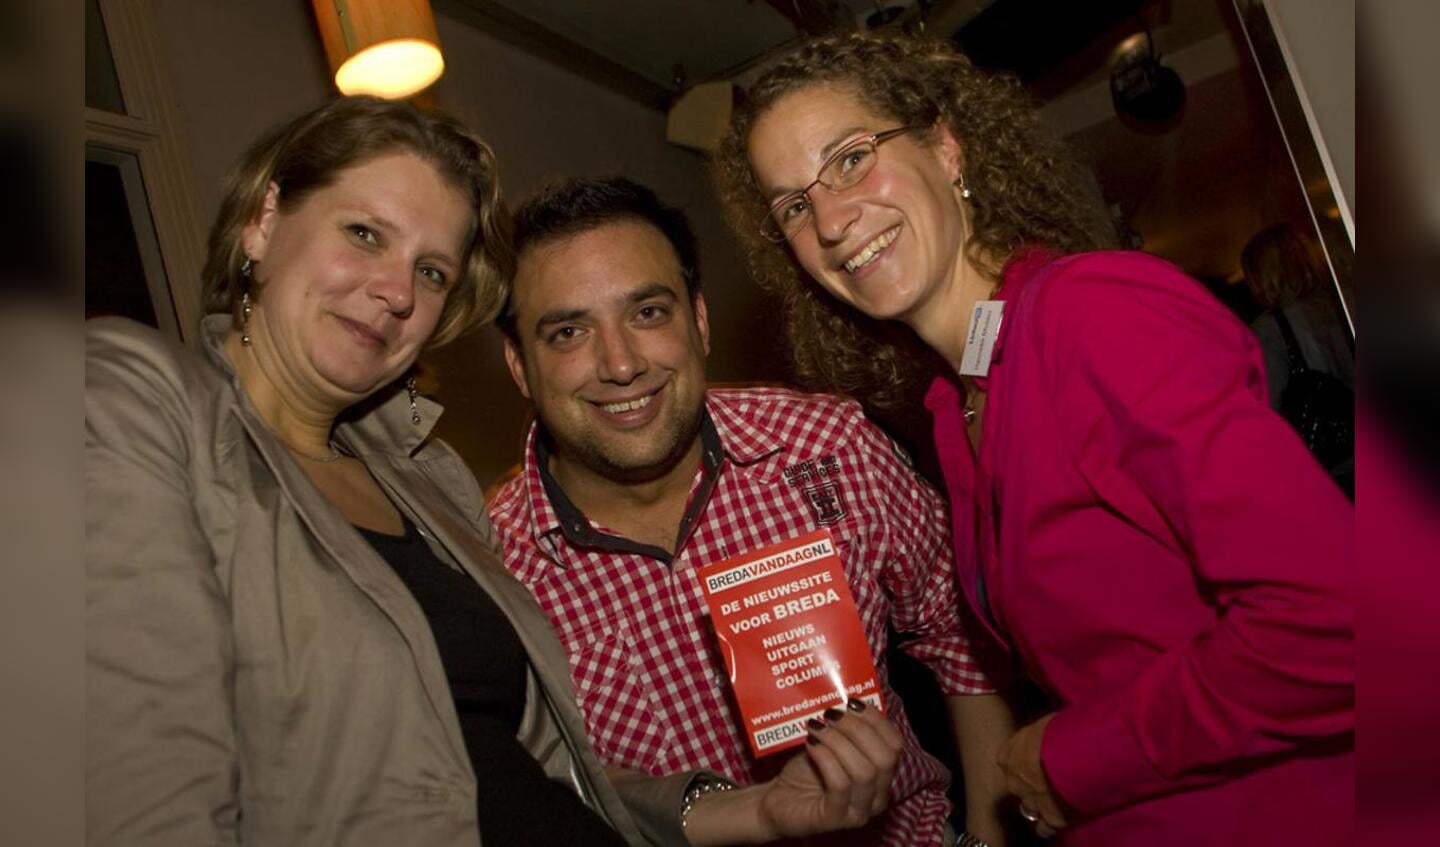 Netwerken tijdens de vierde LinkedIn-meeting in Breda. foto Jorgen Janssens